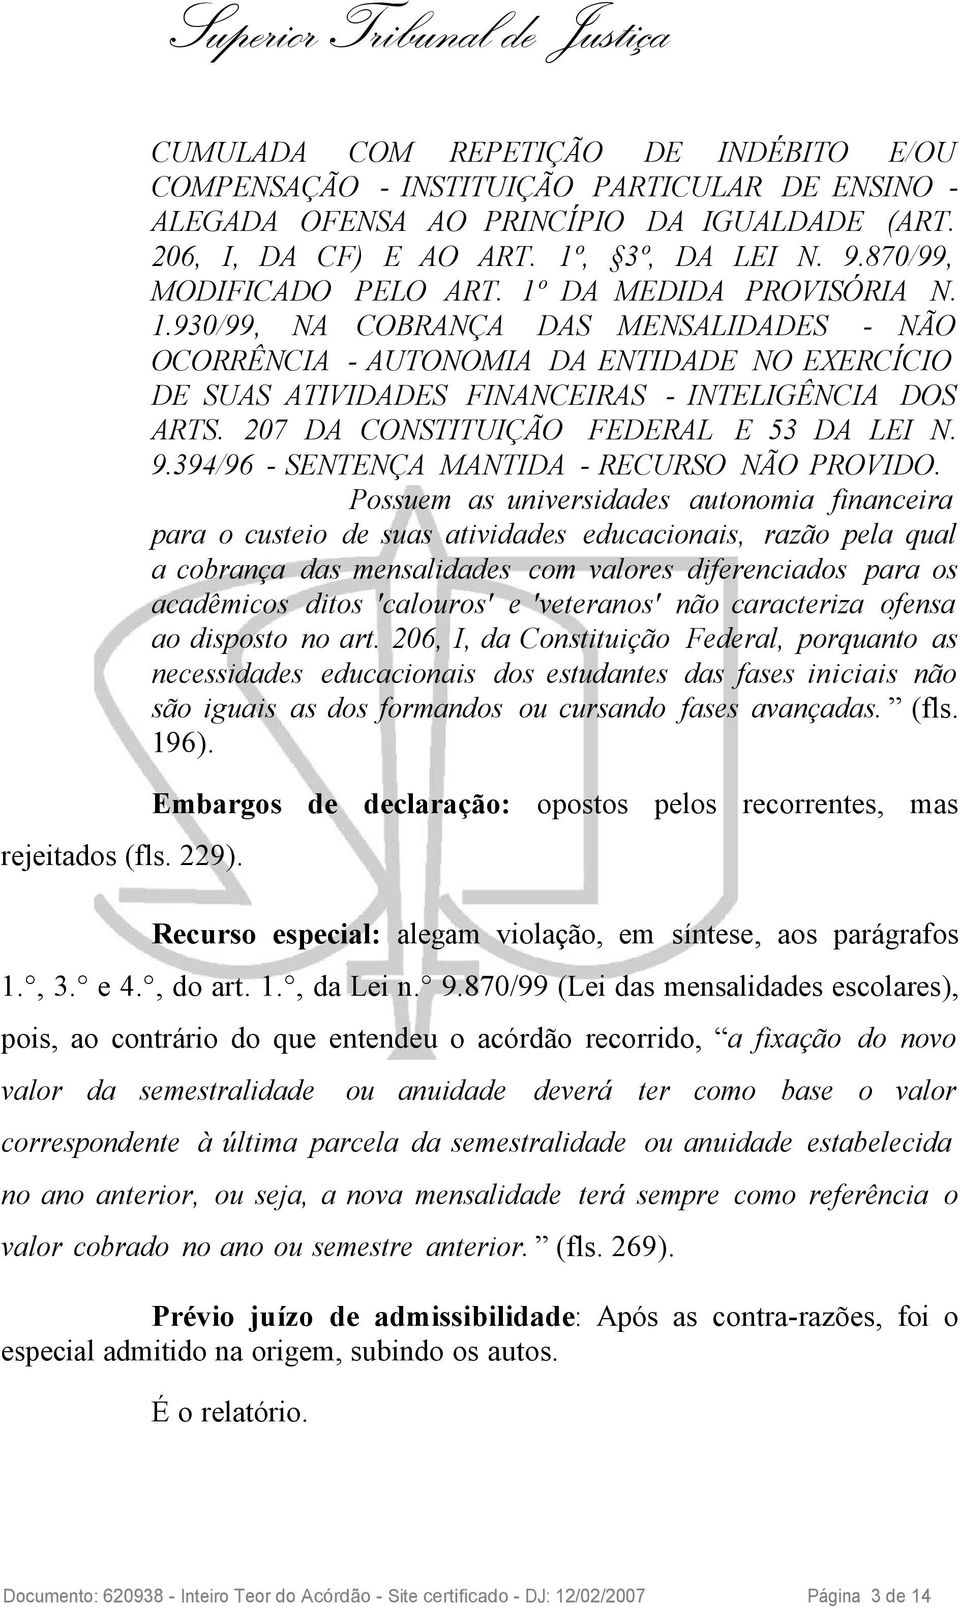 207 DA CONSTITUIÇÃO FEDERAL E 53 DA LEI N. 9.394/96 - SENTENÇA MANTIDA - RECURSO NÃO PROVIDO.